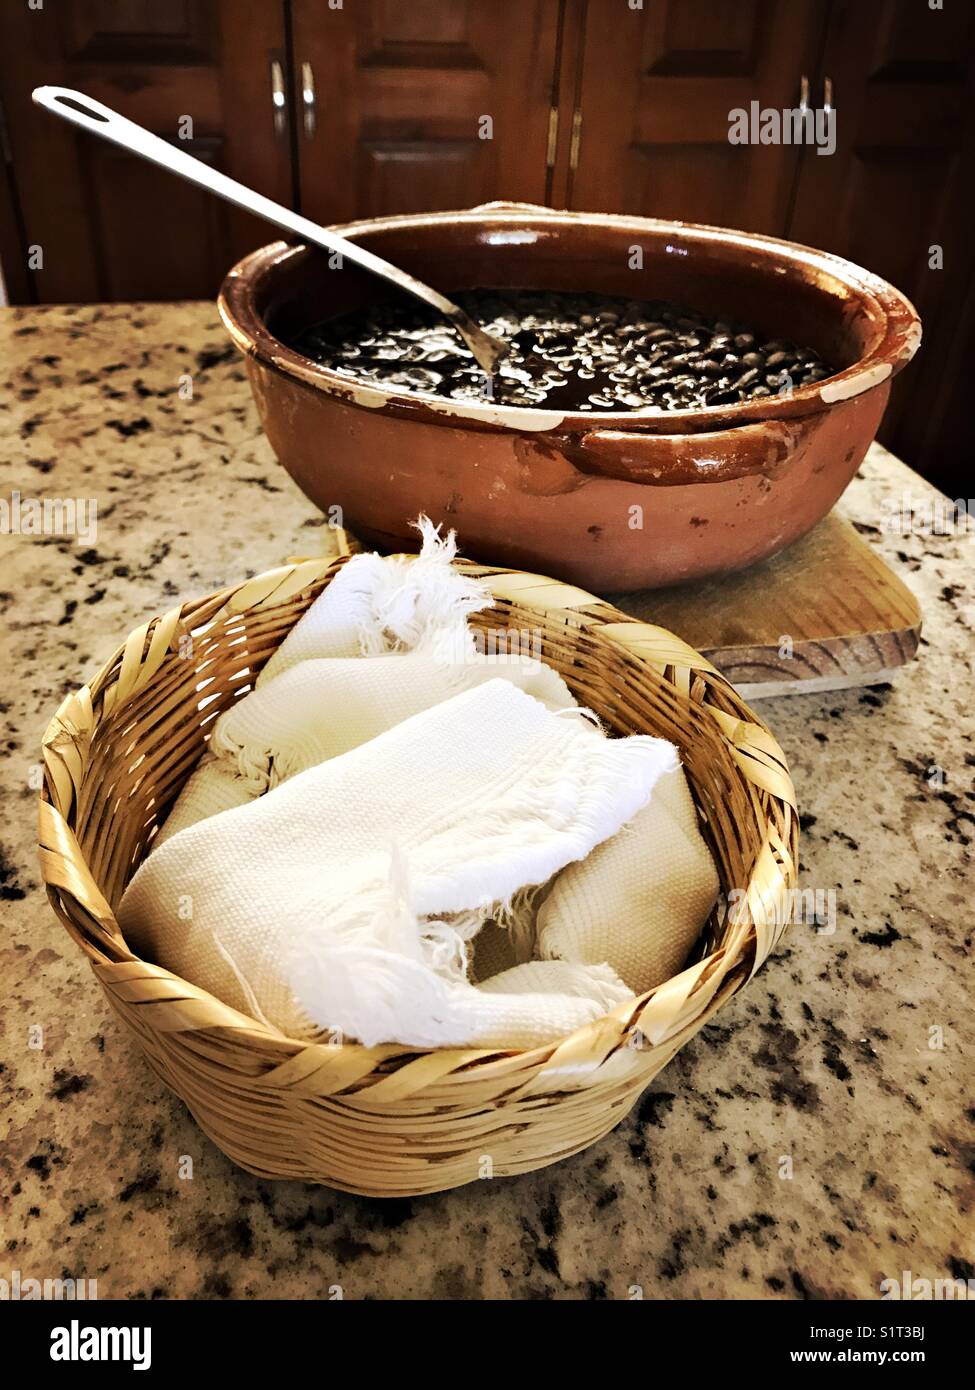 Home cotto tradizionale cucina messicana di fagioli neri e tortillas sono pronti a servire e mangiare. Foto Stock